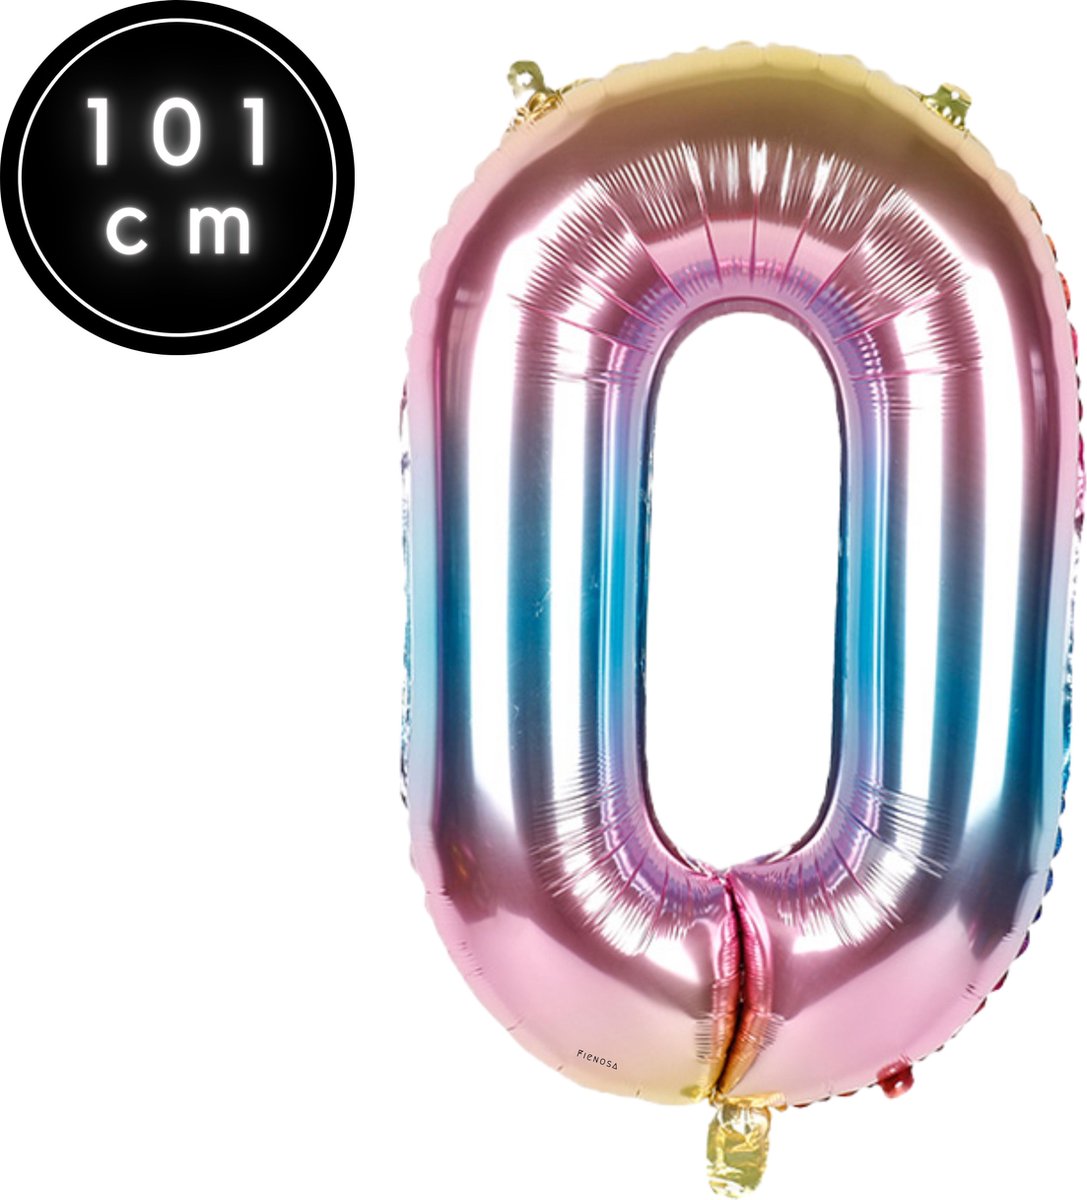 Fienosa Cijfer Ballonnen nummer 0 - Regenboog - 101 cm - XL Groot - Helium Ballon